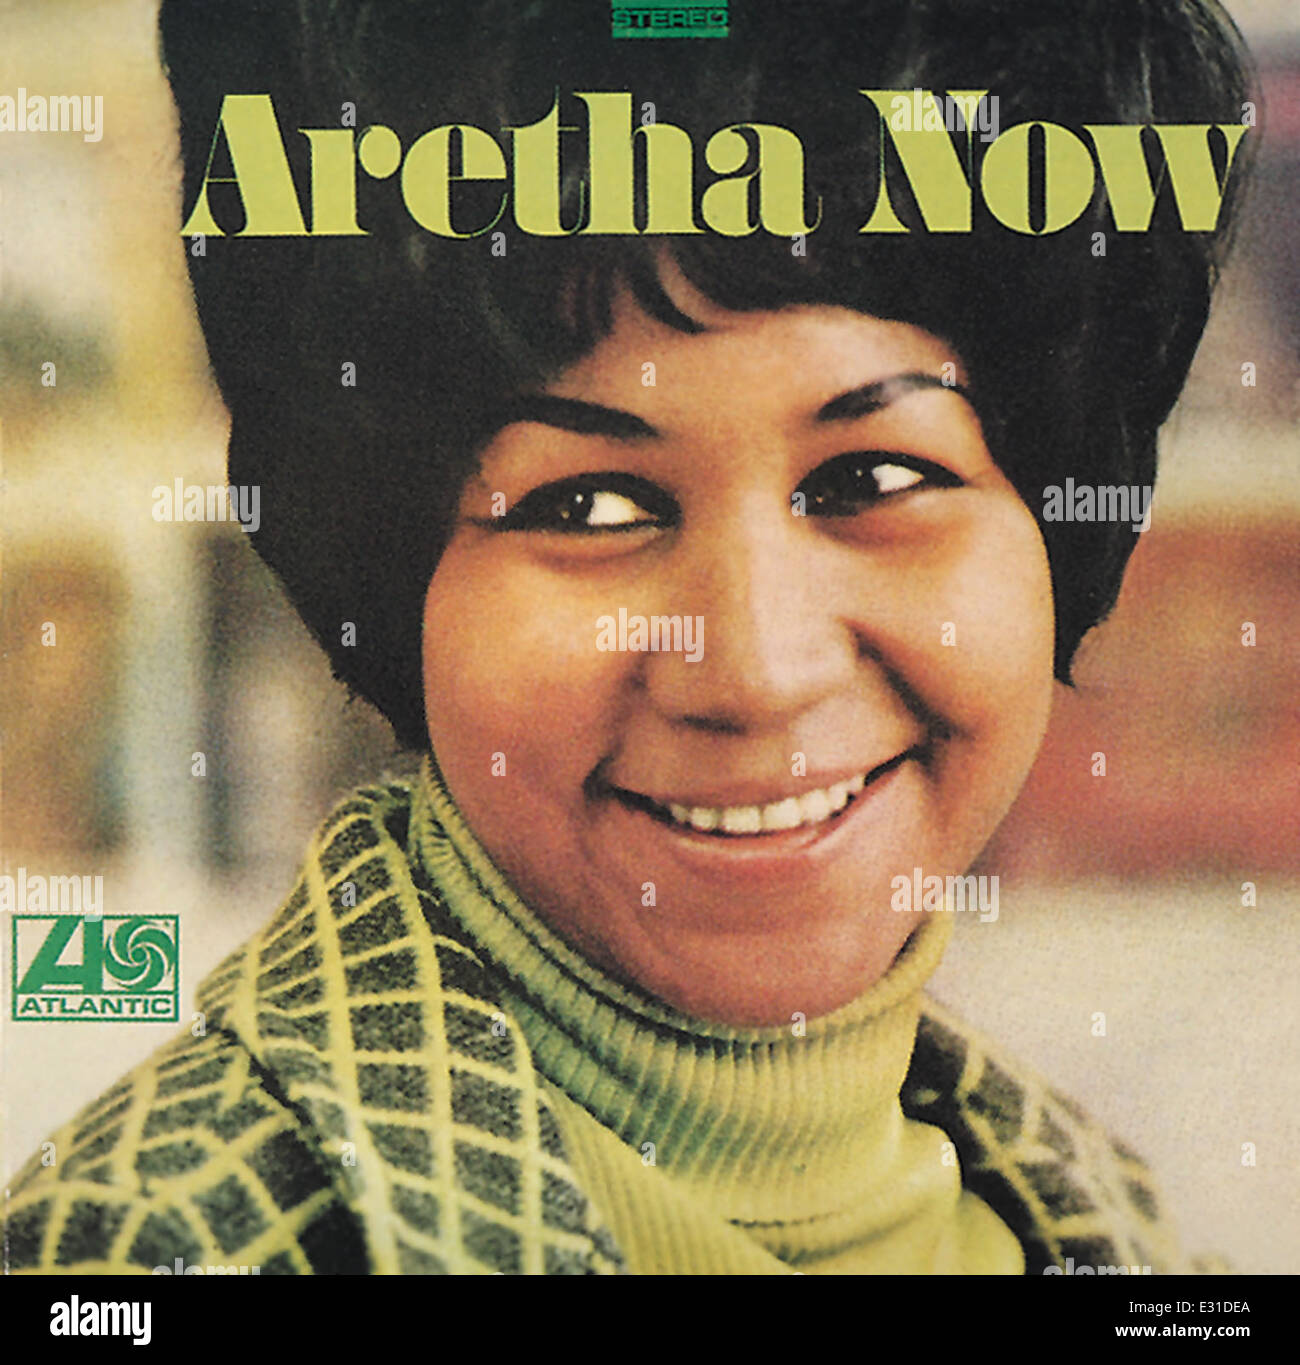 Aretha Franklin, chanteur et musicien américain vers 1960. Avec la permission de Granamour Weems Collection. Usage éditorial uniquement. Banque D'Images